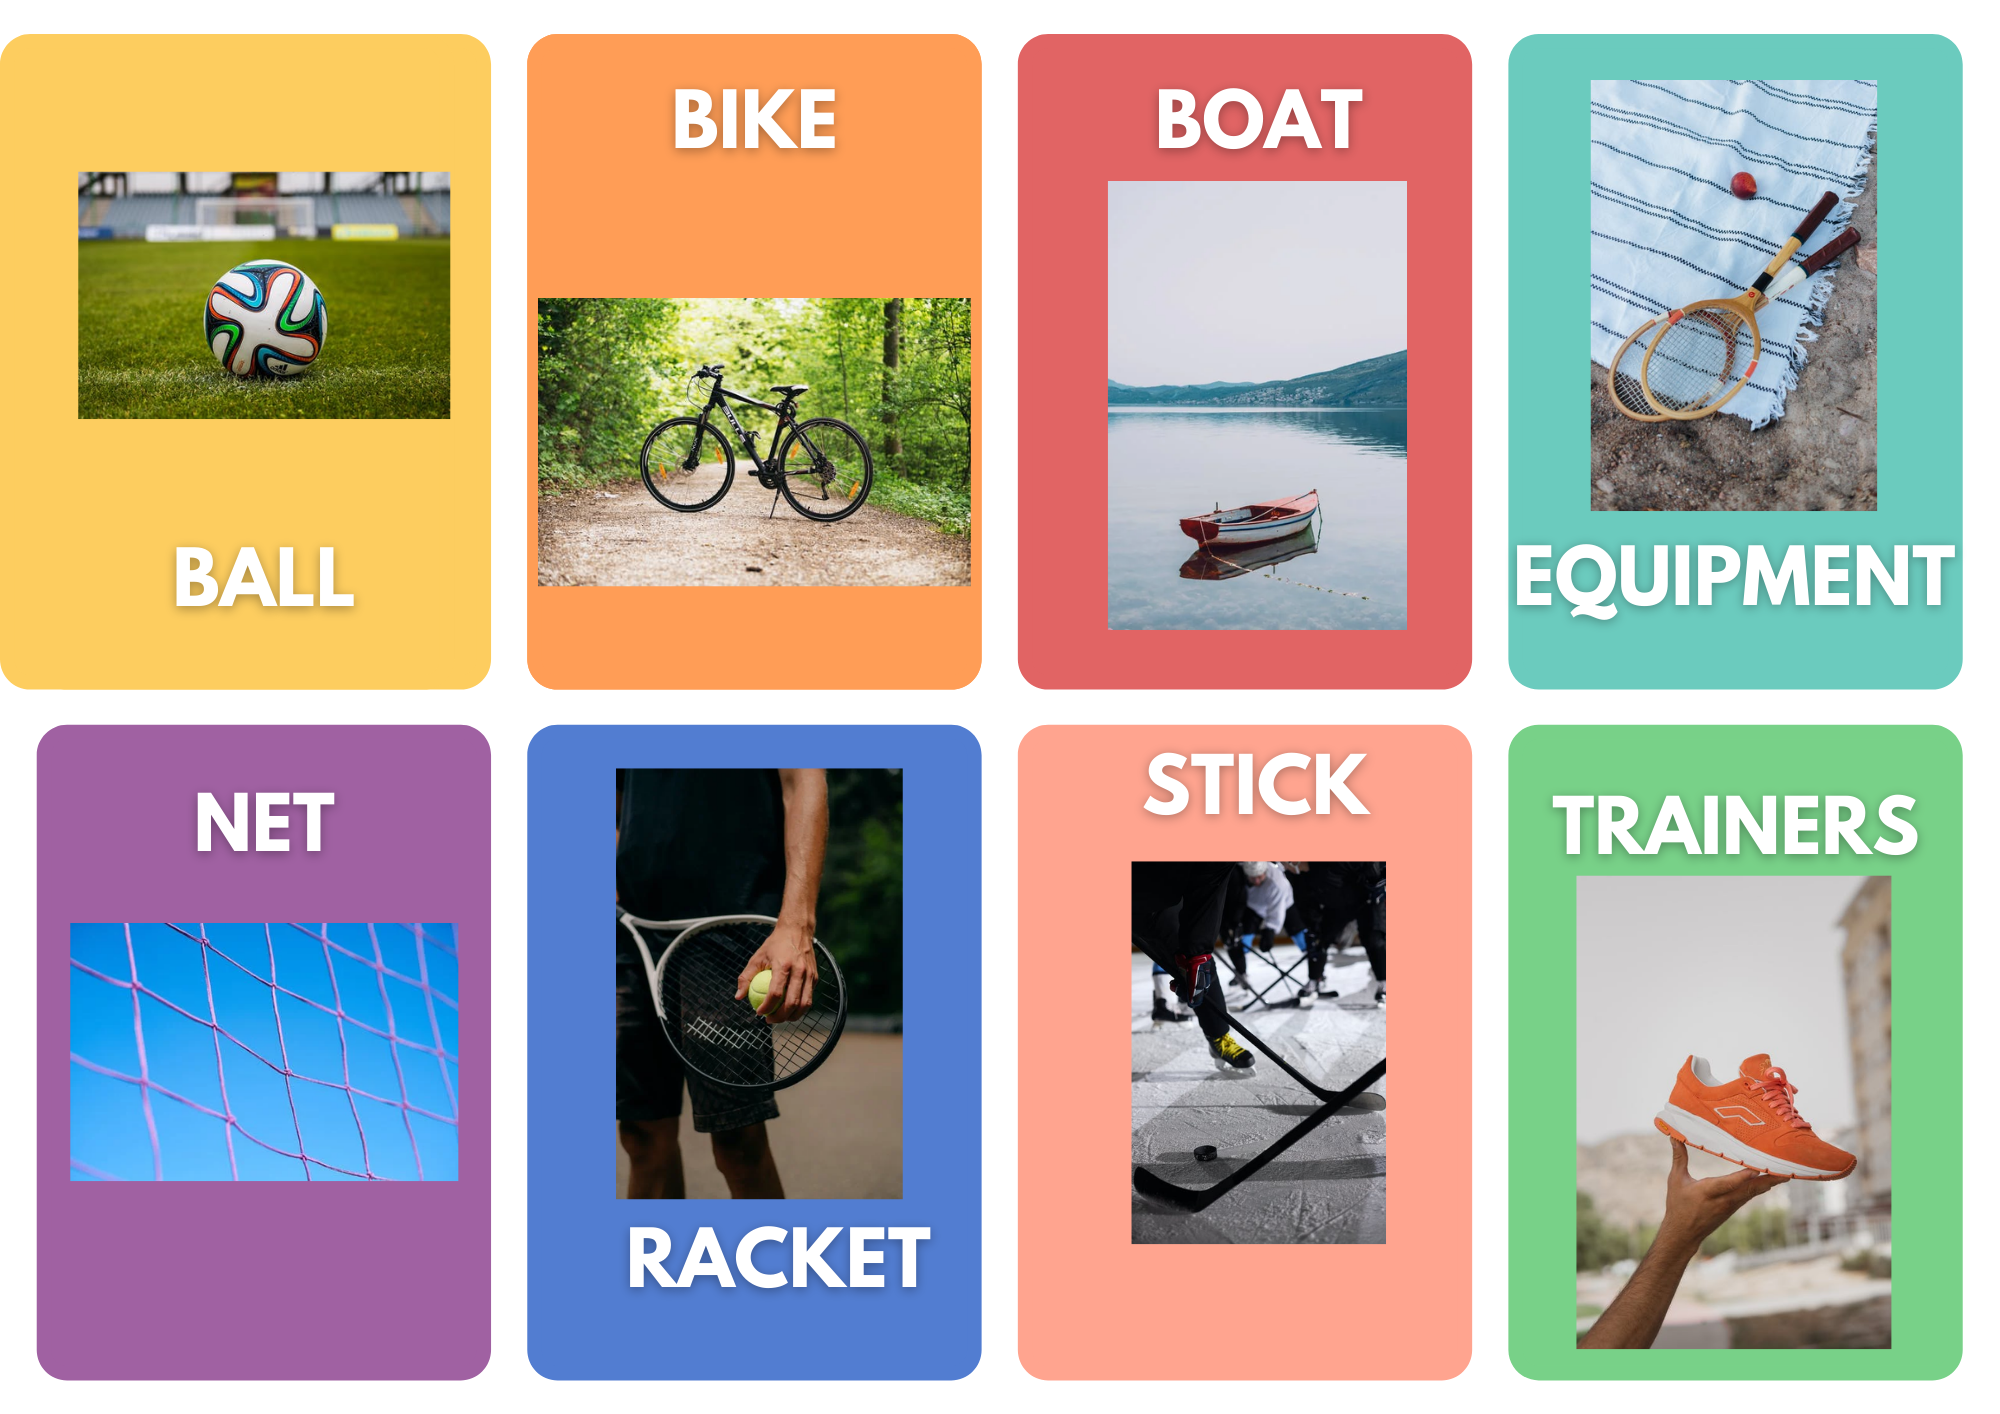 Sucesión de ocho materiales deportivos: pelota, bicicleta, bote, material en general, red, raqueta, stick y deportivas.